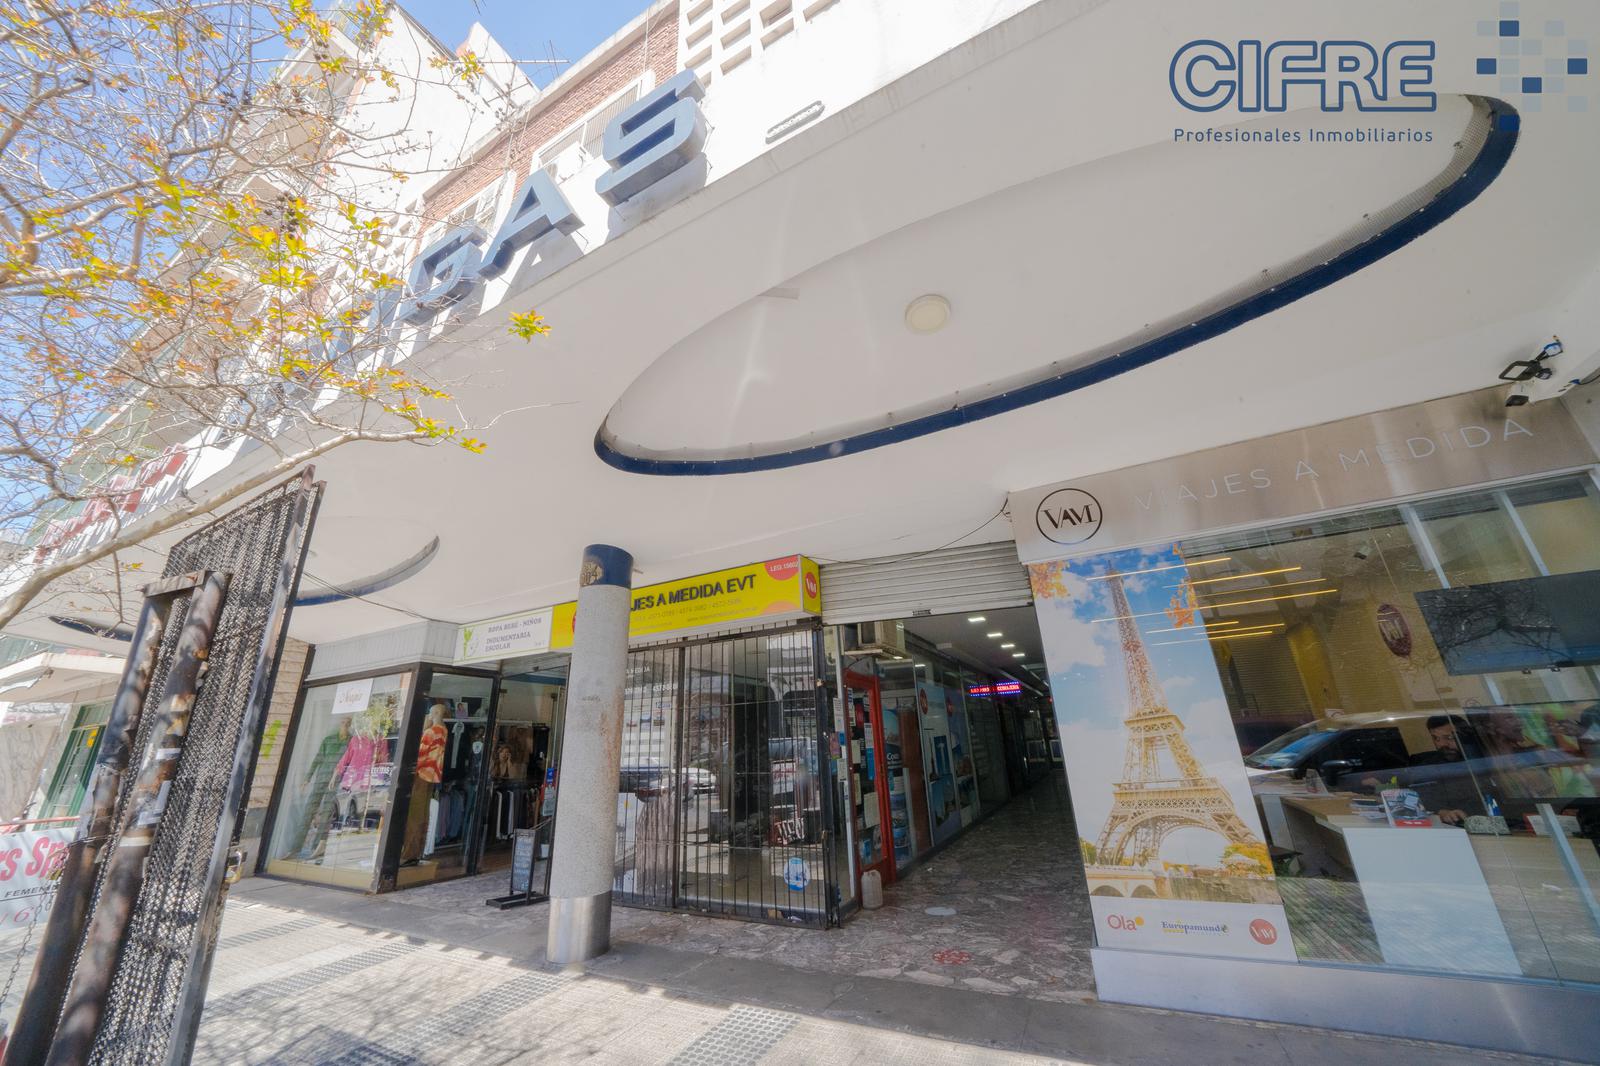 #5068391 | Rental | Store | Villa Pueyrredon (Cifre Profesionales Inmobiliarios)